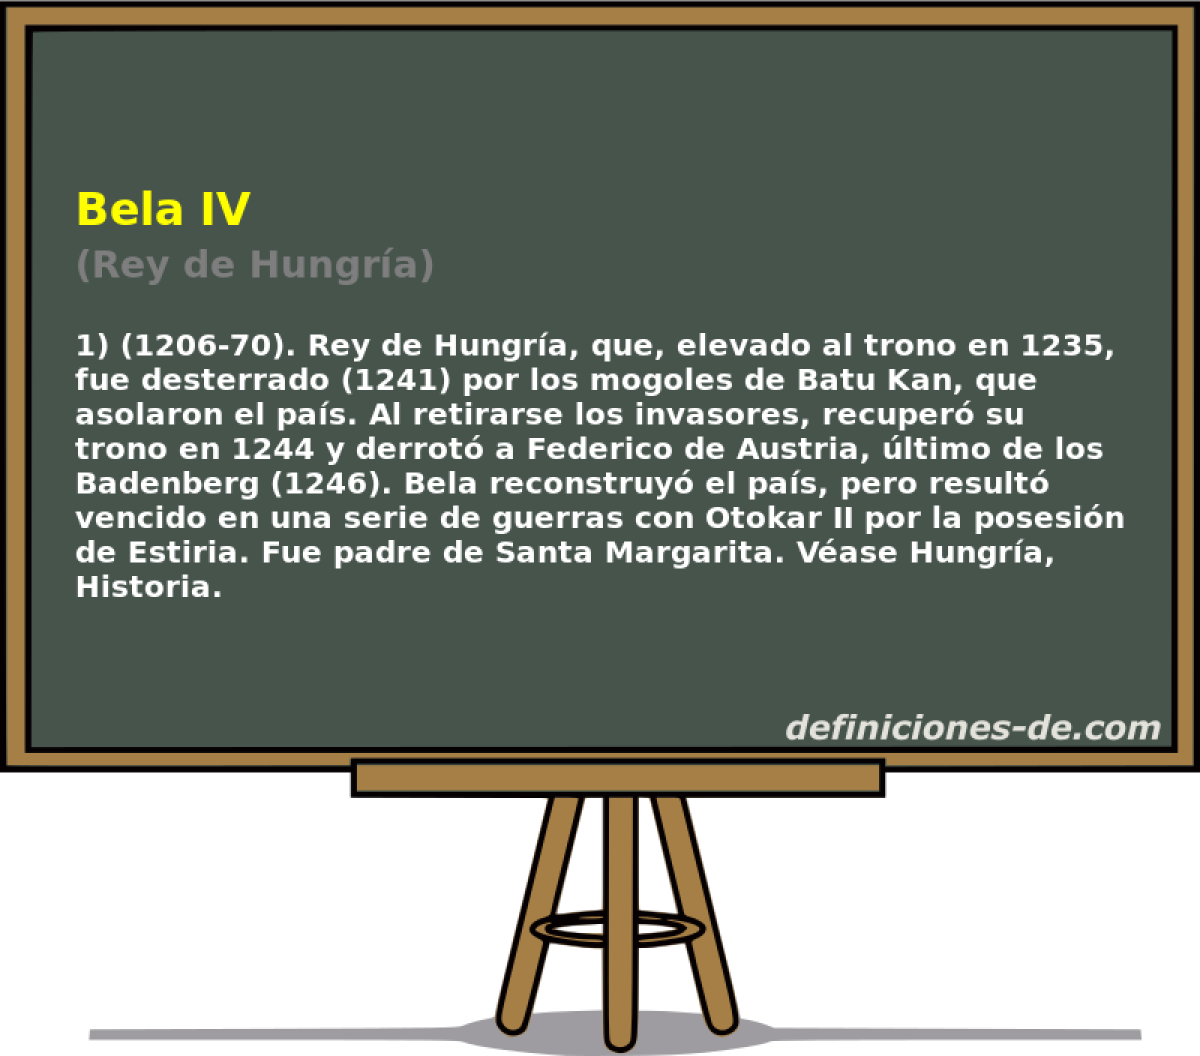 Bela IV (Rey de Hungra)